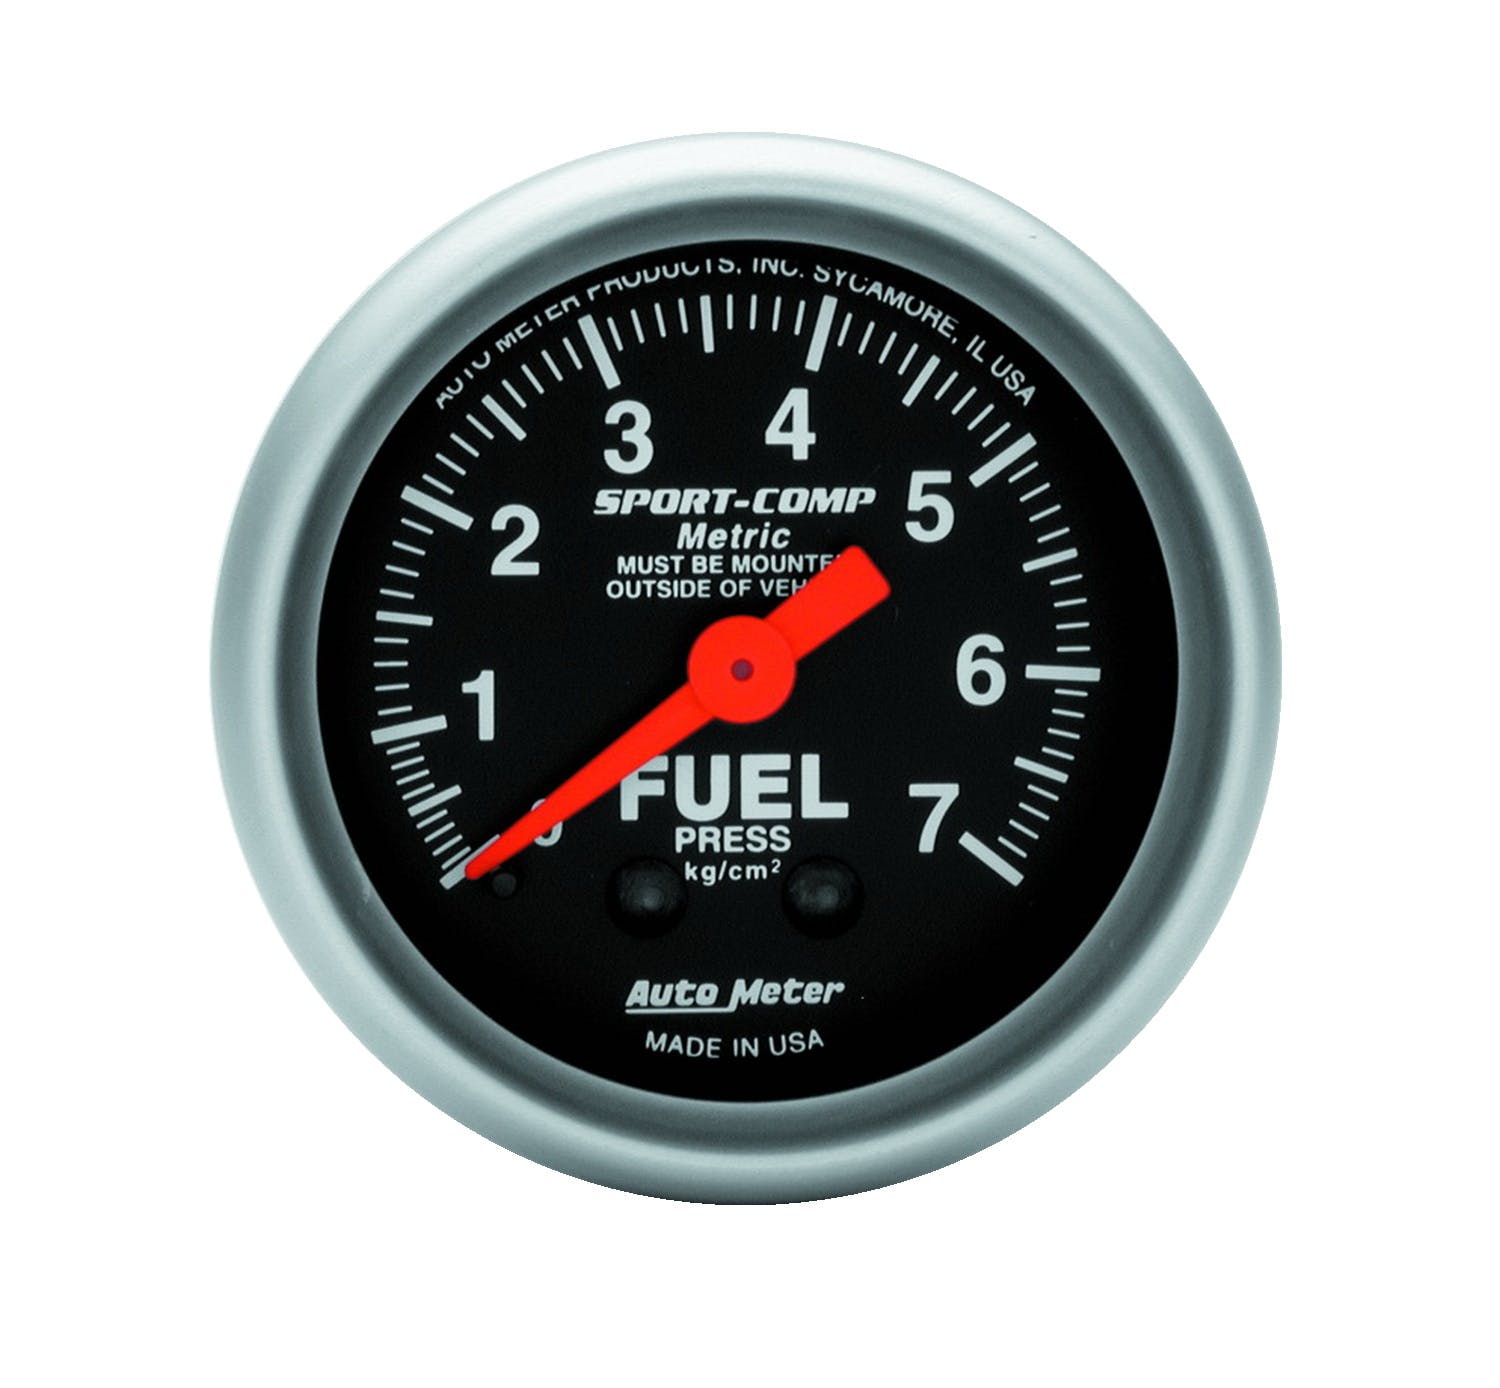 AutoMeter Products 3312-J Fuel Press 0-7 Kg/Cm2